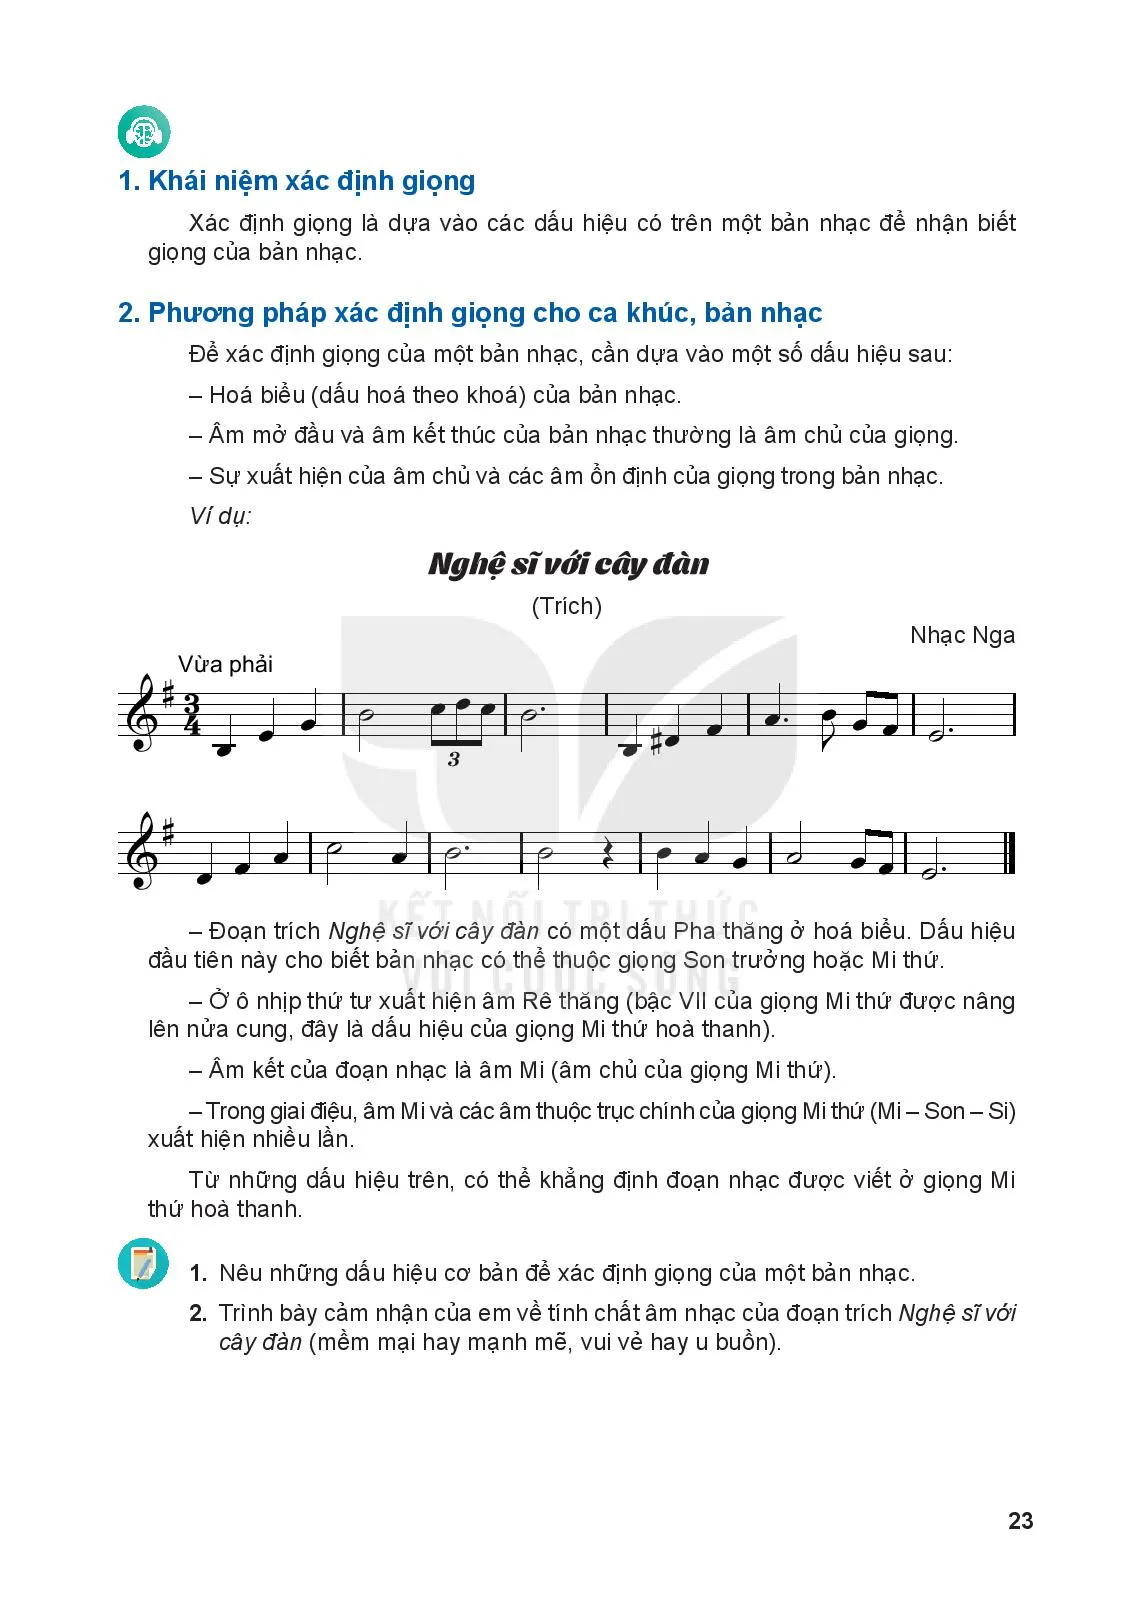 Bài 1: Phương pháp xác định giọng cho ca khúc, bản nhạc 